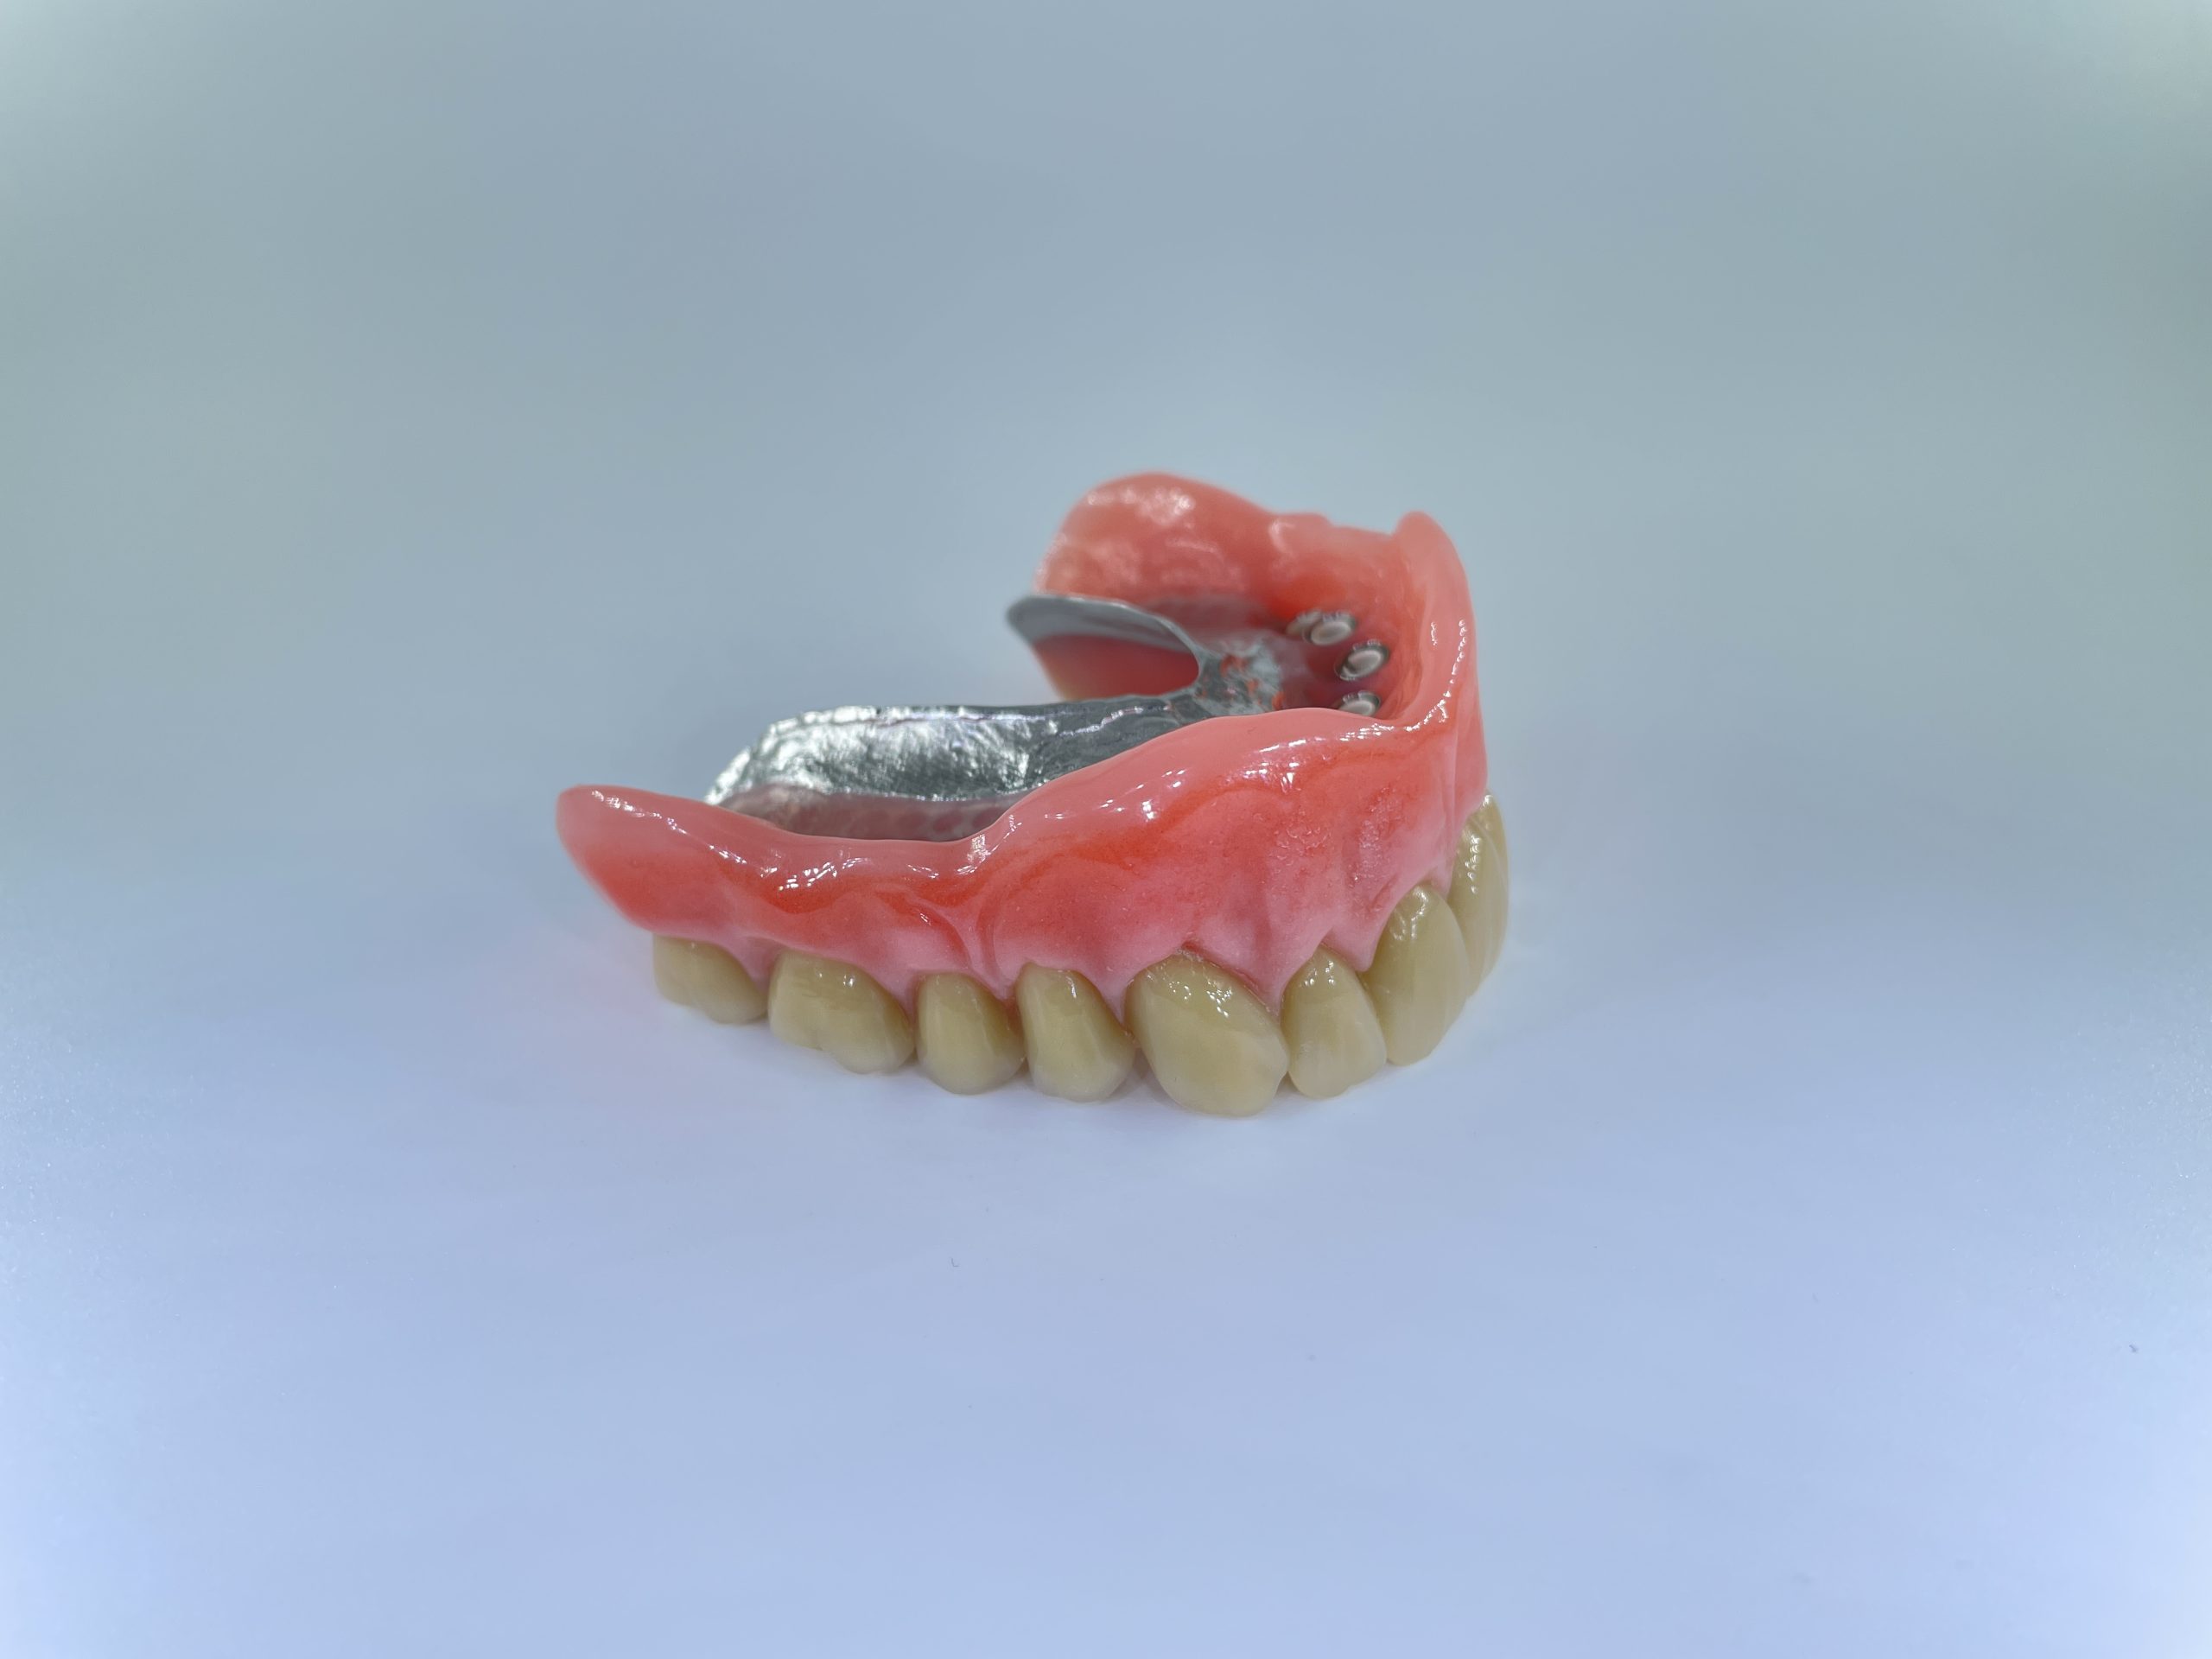 hybrid tandprotese til overmund højre tiltet Resultater af færdigeproduceret tandproteser